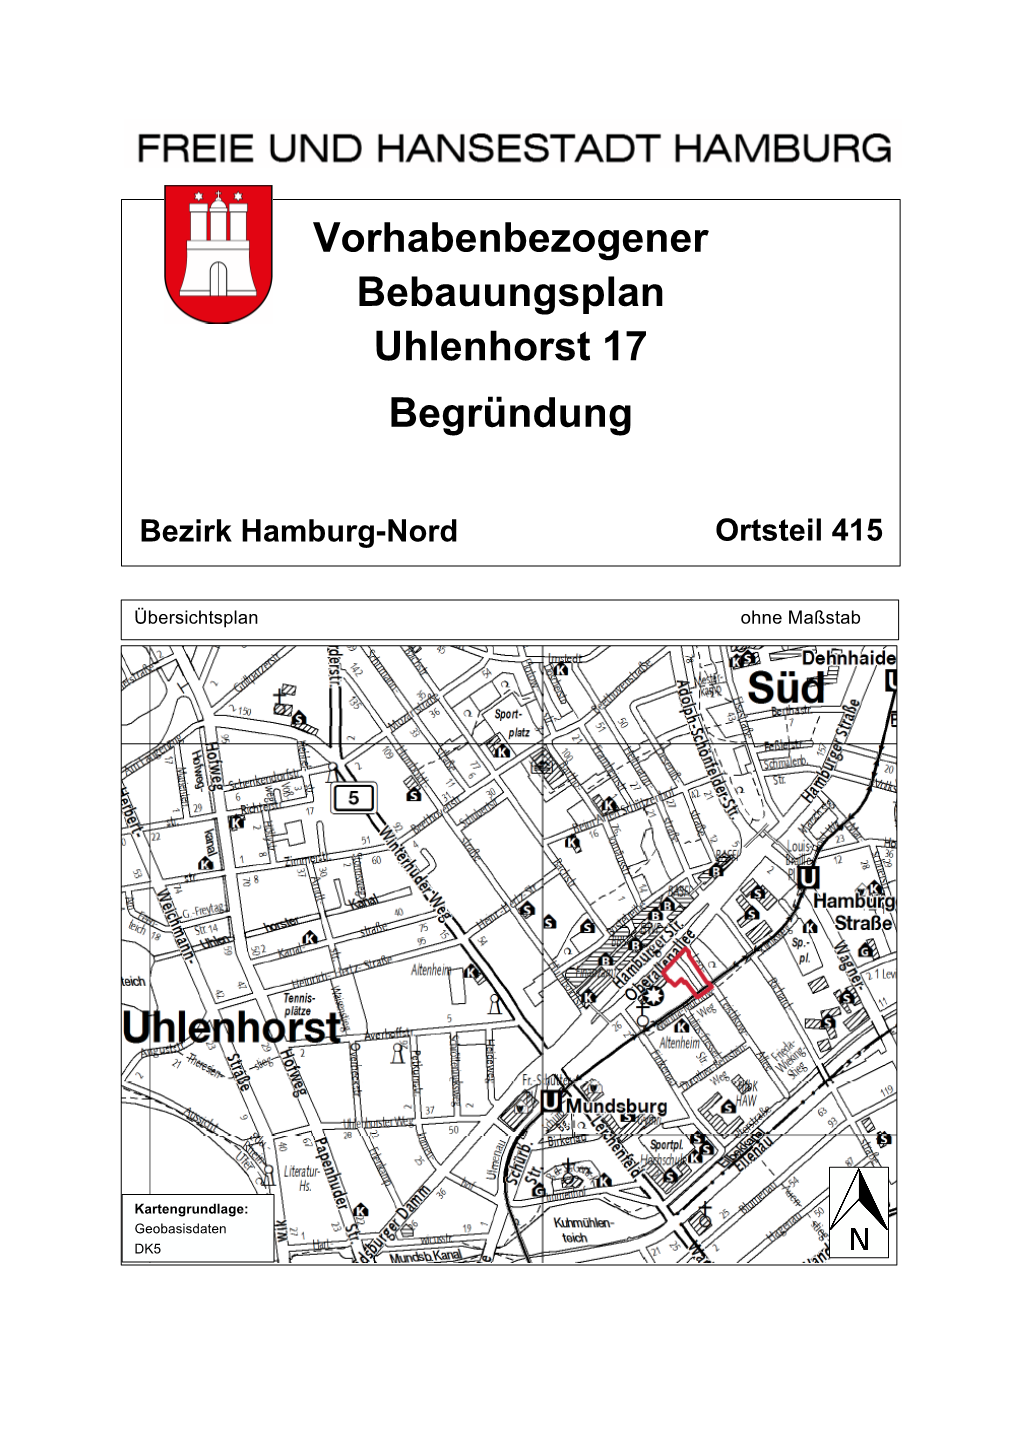 Vorhabenbezogener Bebauungsplan Uhlenhorst 17 Begründung